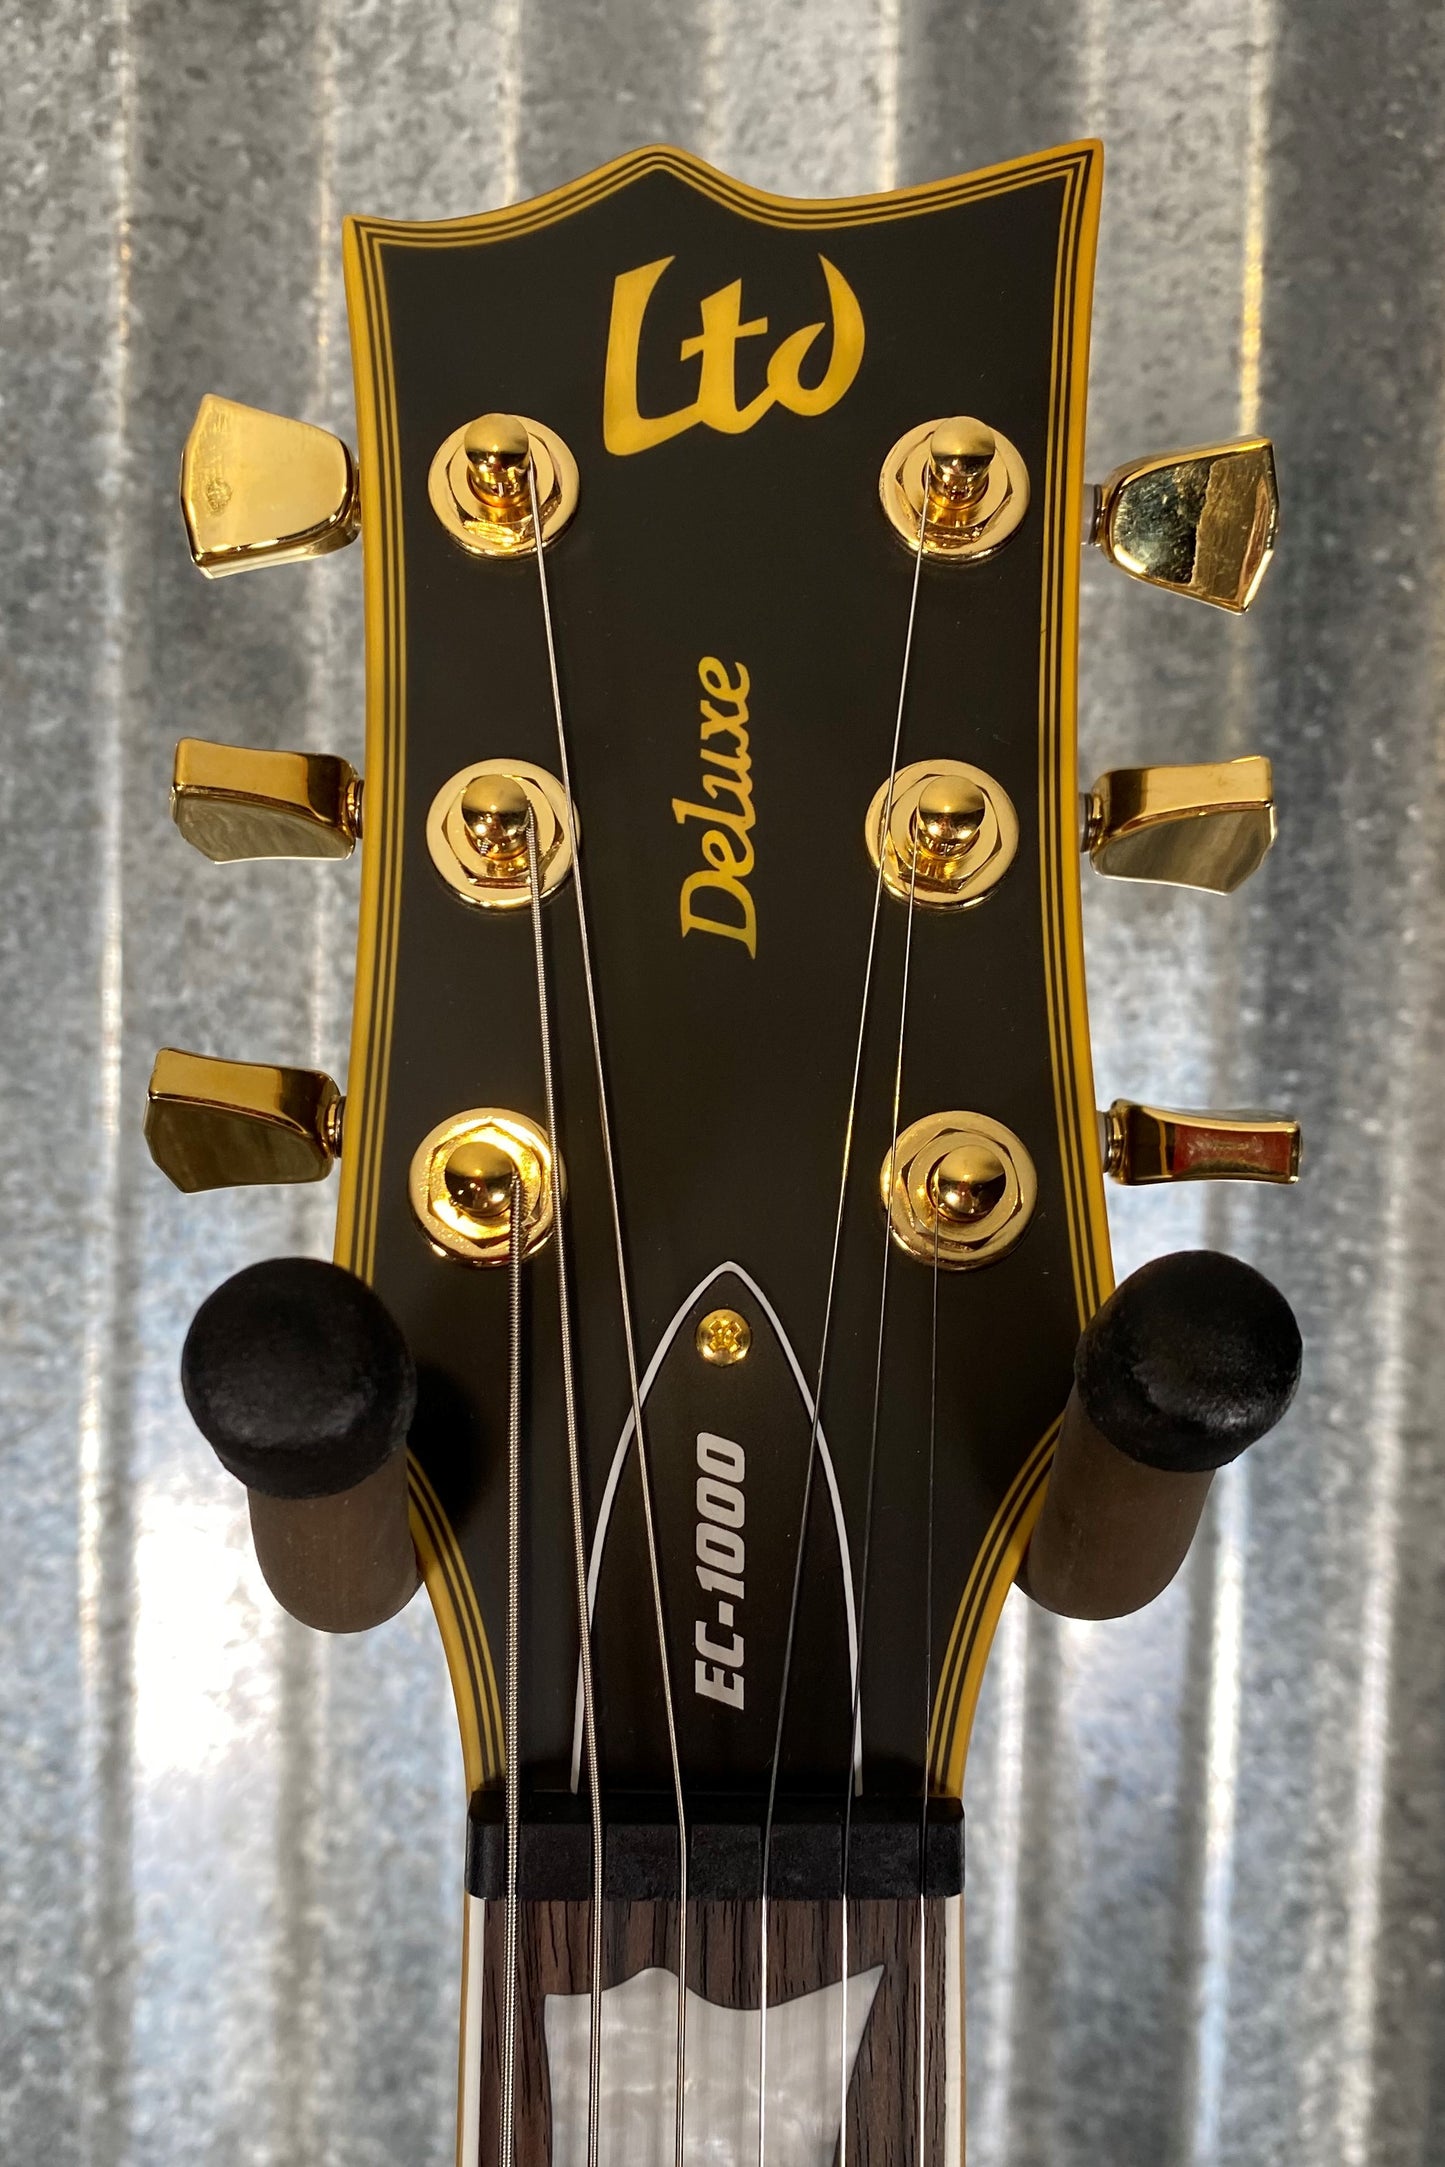 ESP LTD EC-1000 Eclipse EMG Vintage Black Guitar LEC1000VB #0219 Used